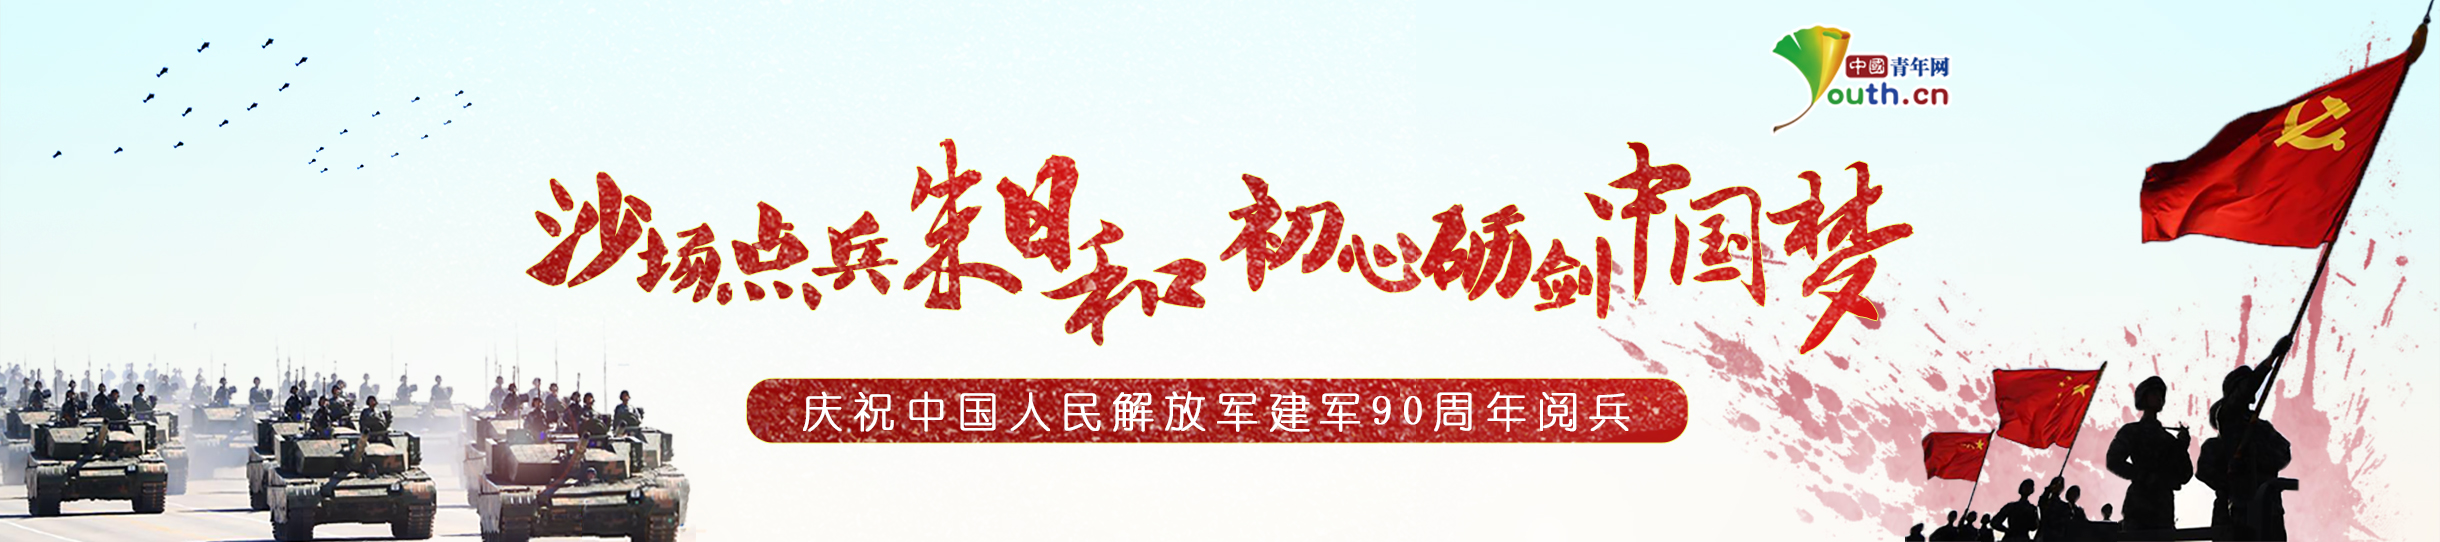 庆祝中国人民解放军建军90周年阅兵.jpg